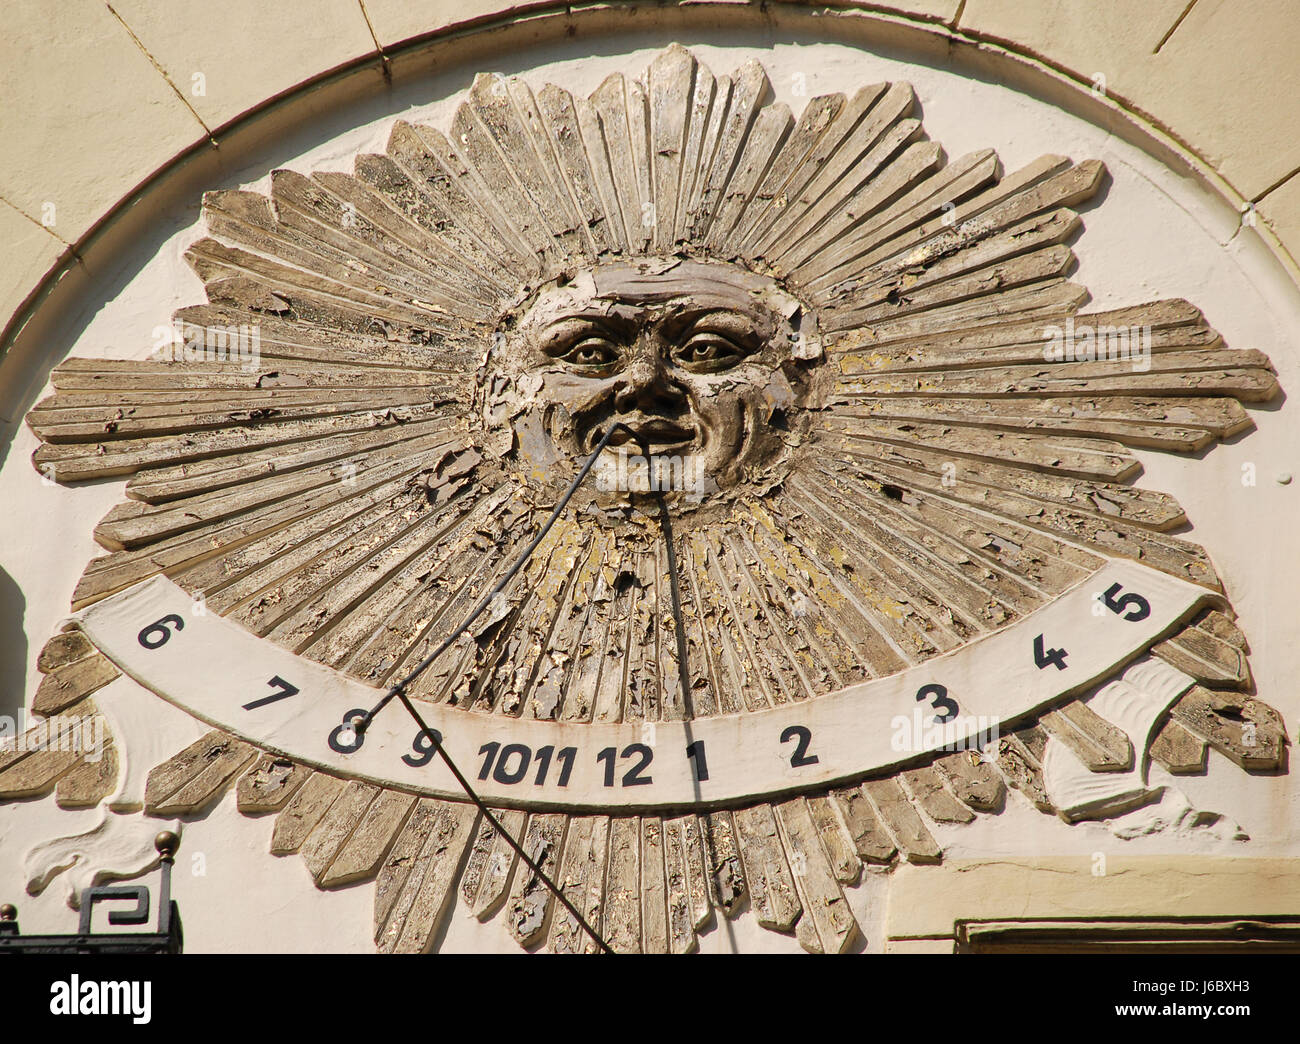 Tiempo puntero reloj de sol publicidad anuncios summertime mano reloj indican mostrar dios Foto de stock